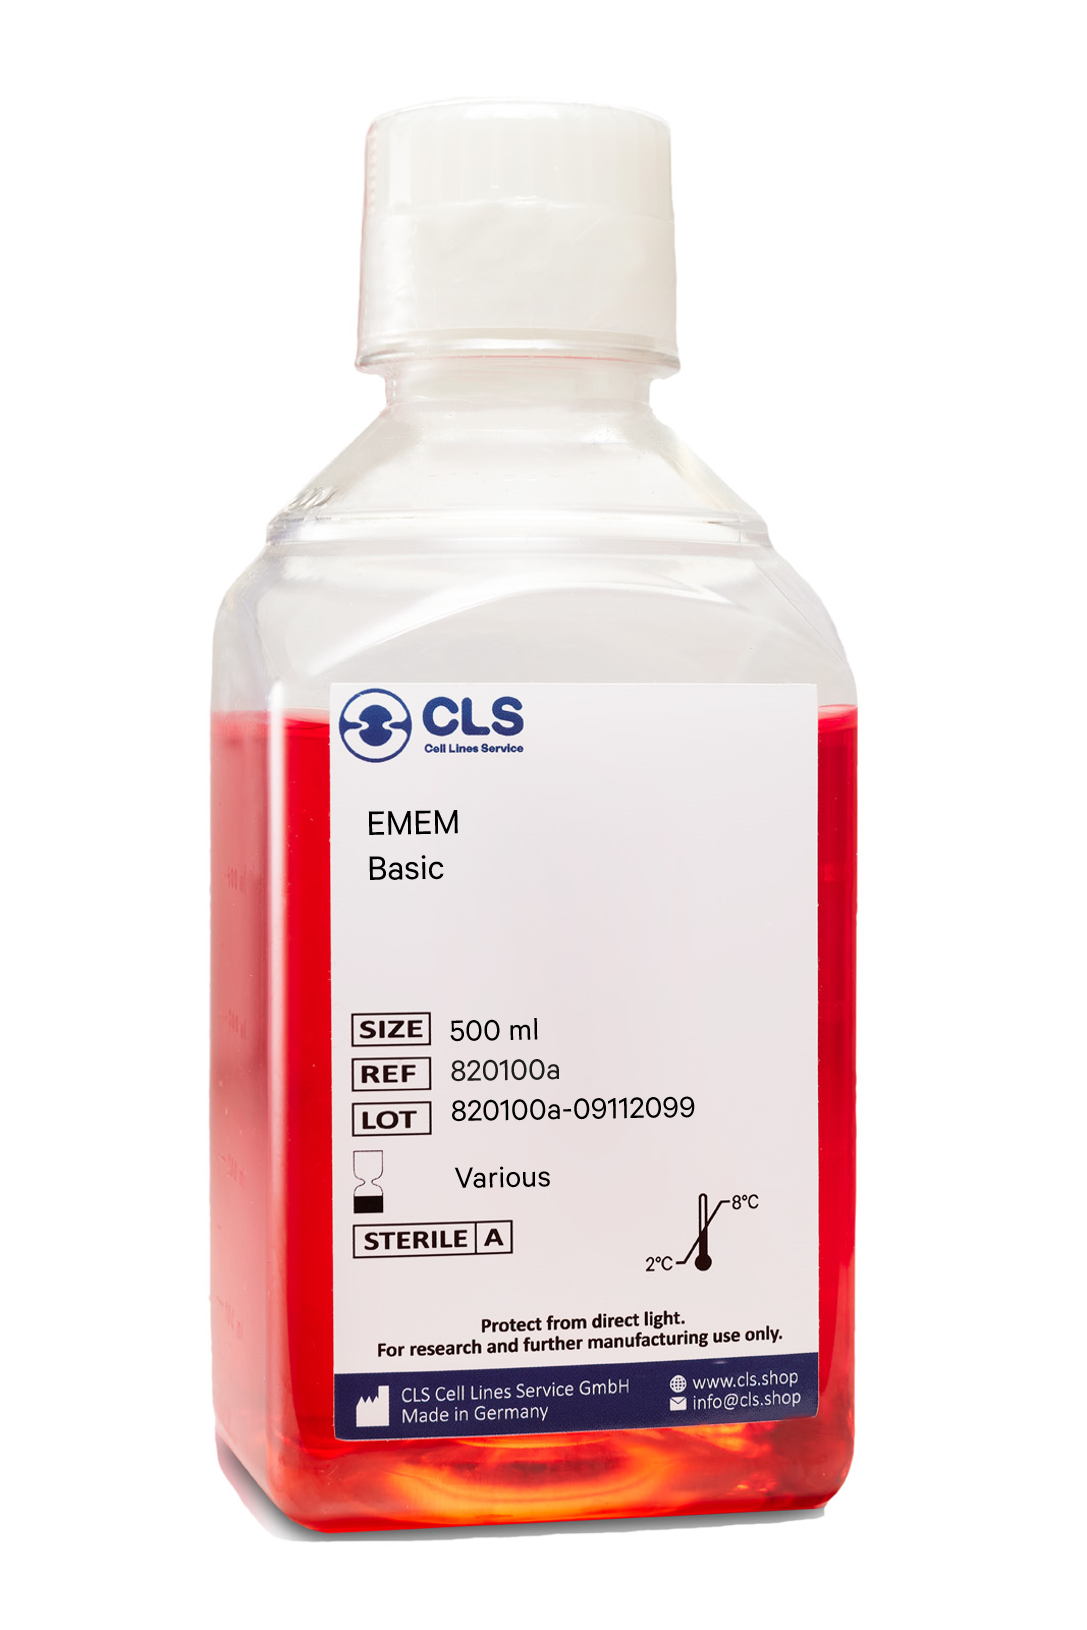 EMEM (MEM Eagle), w: 2 mM L-Glutamine, w: 1.5 g/L NaHCO3, w: EBSS, w: 1 mM Sodium pyruvate, w: NEAA